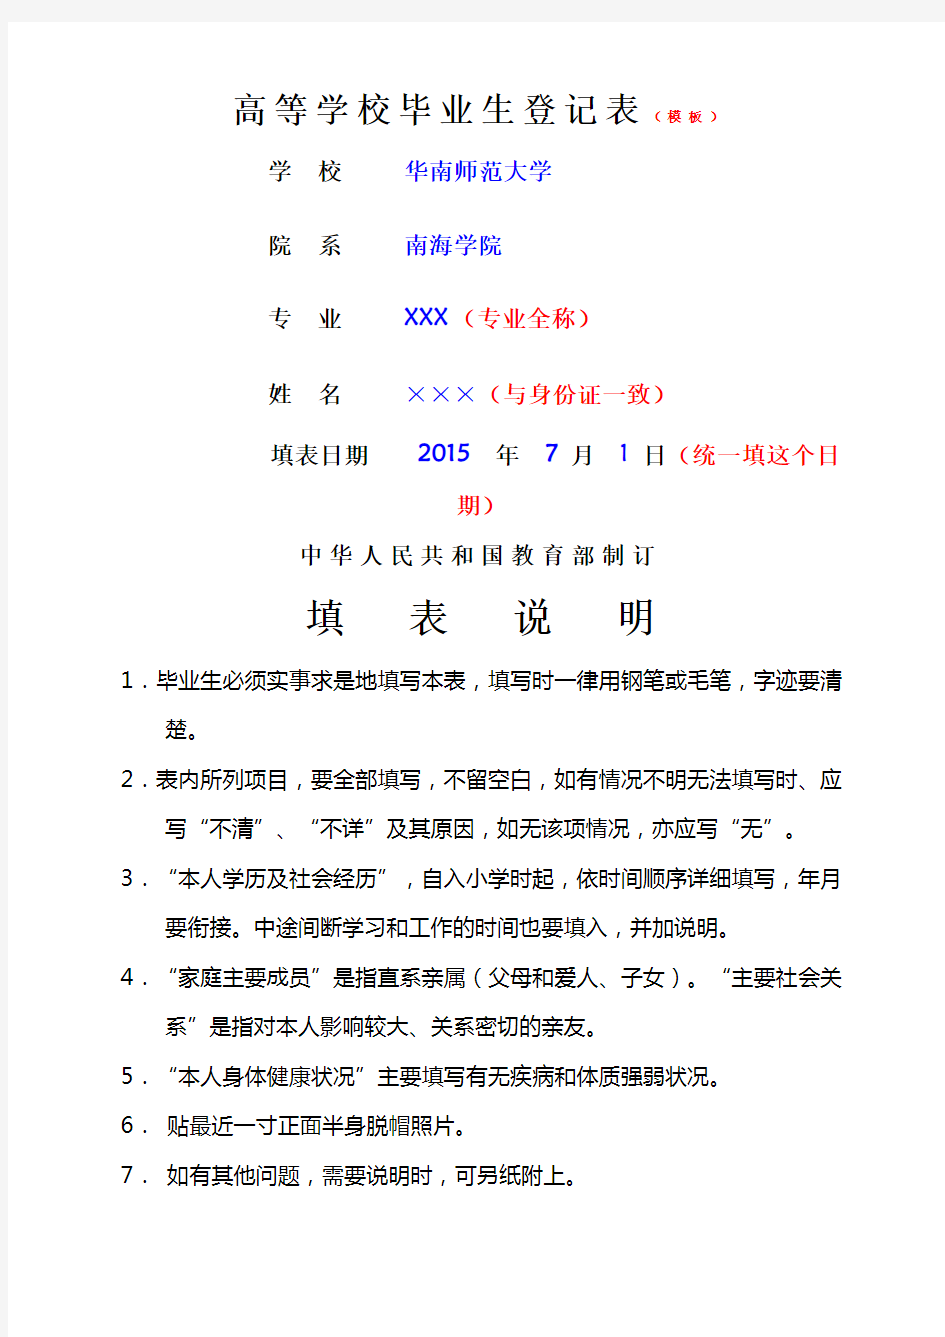 广东省普通高等学校毕业生登记表填写示范模板